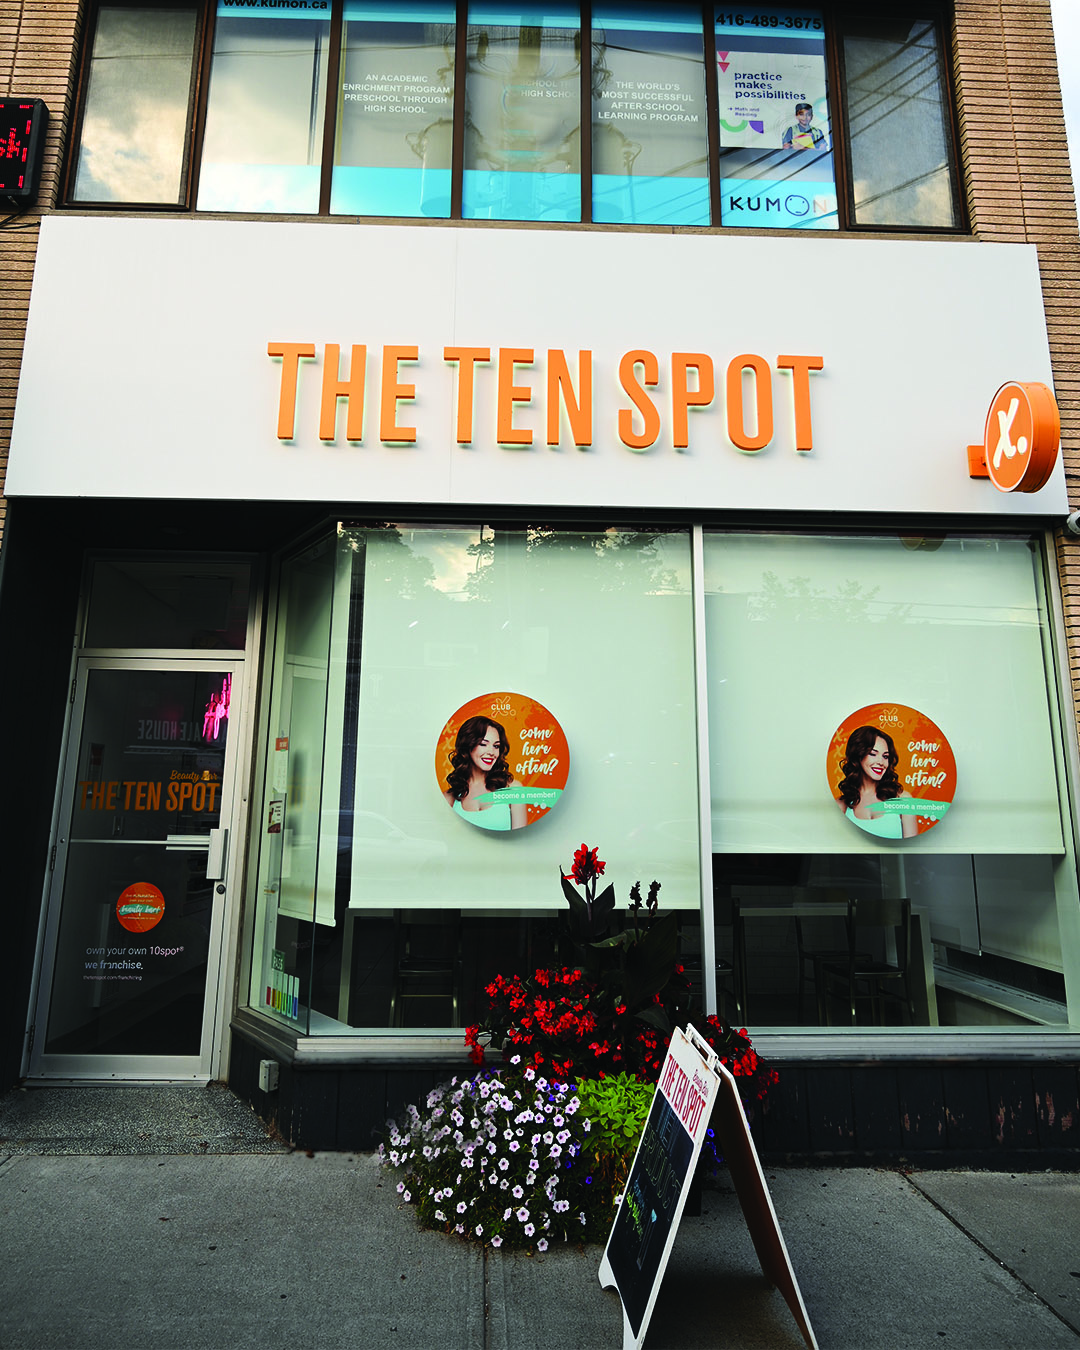 The Ten Spot